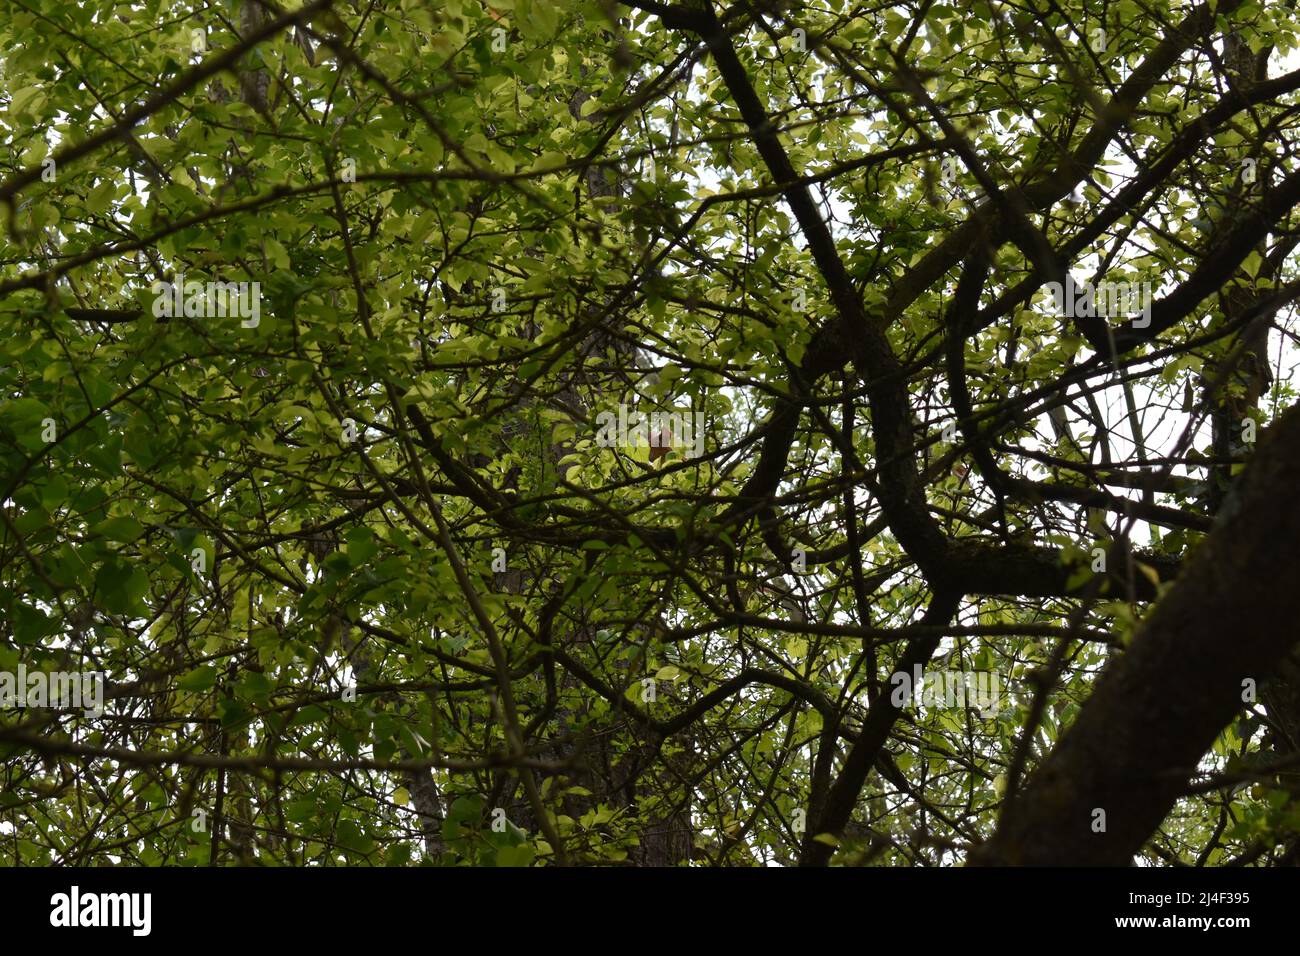 Eichhörnchen, Zweige, Blätter, Blätterdach, Wald, Canopy, Squirrel, Red Squirrel, Leaves, Tree, Forest, Branches, Spring Stock Photo